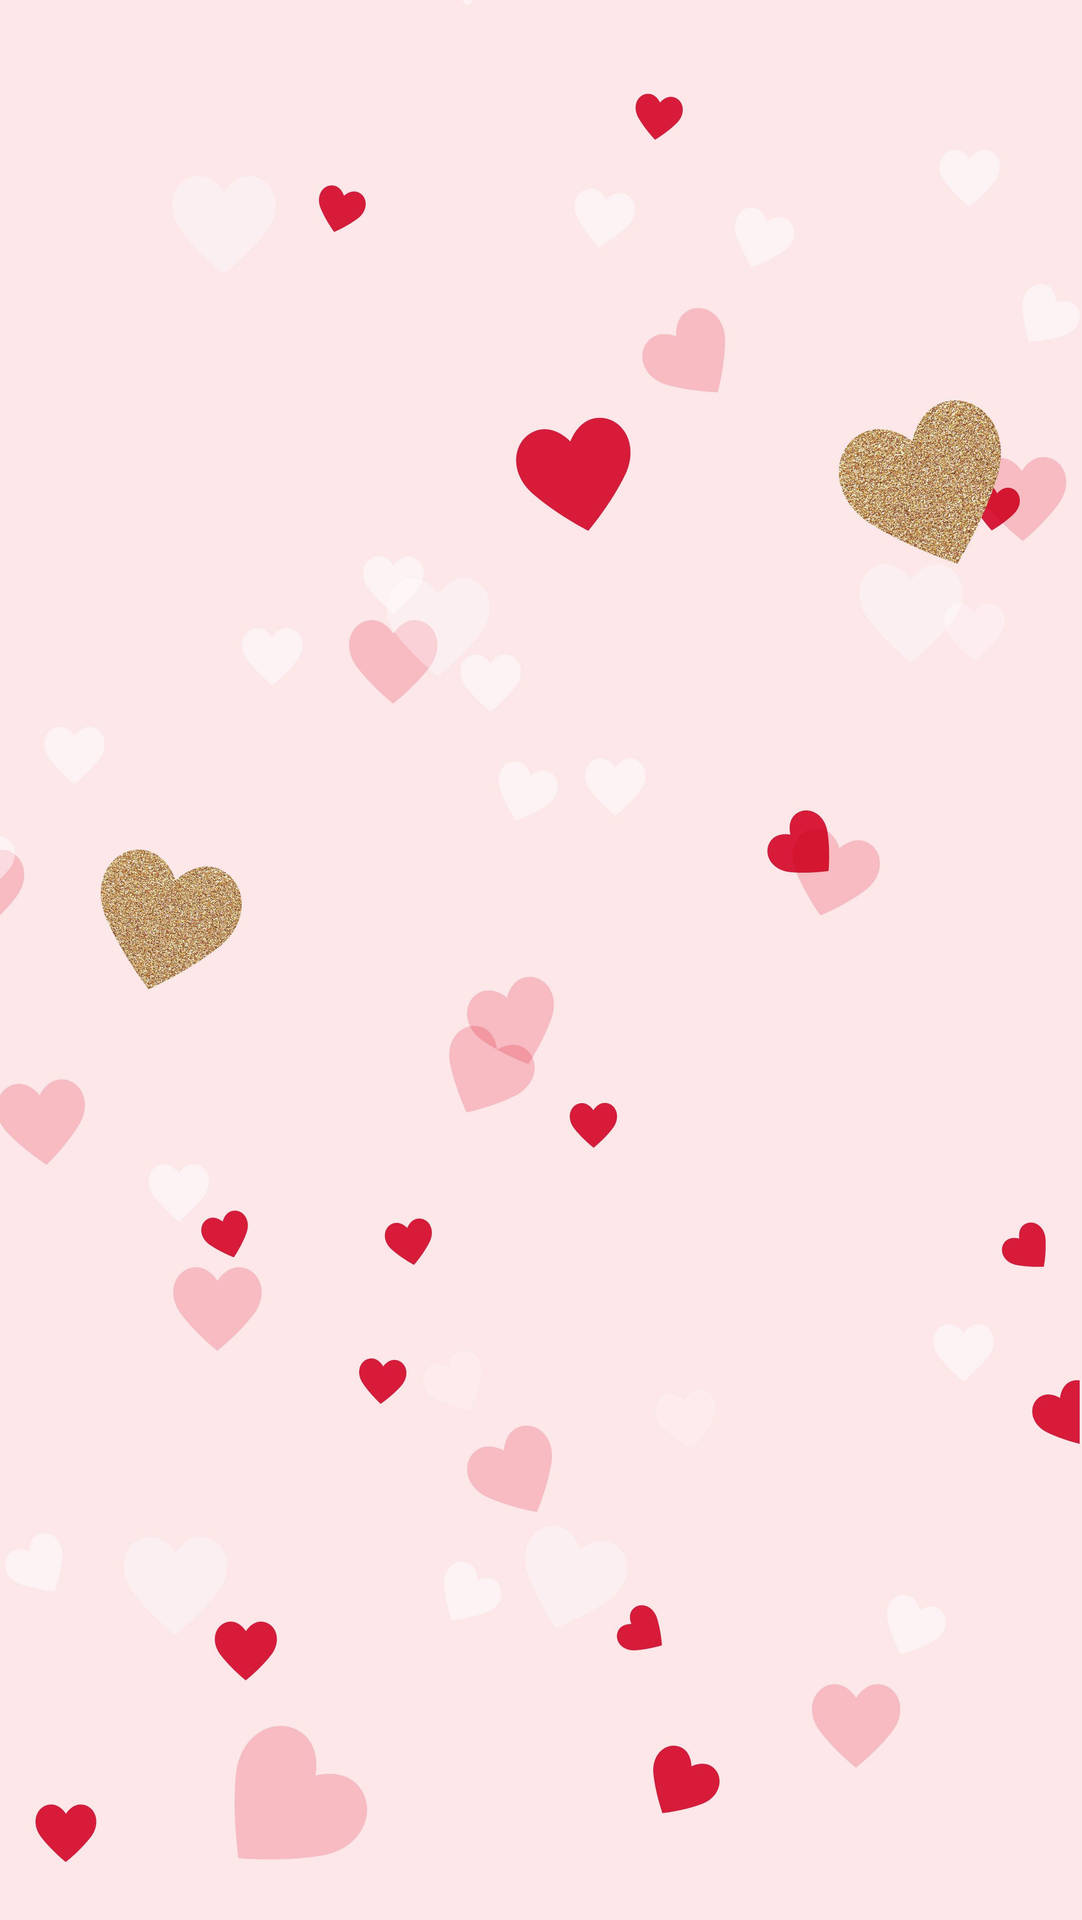 Cute Girly Hearts Pattern wallpaper. 